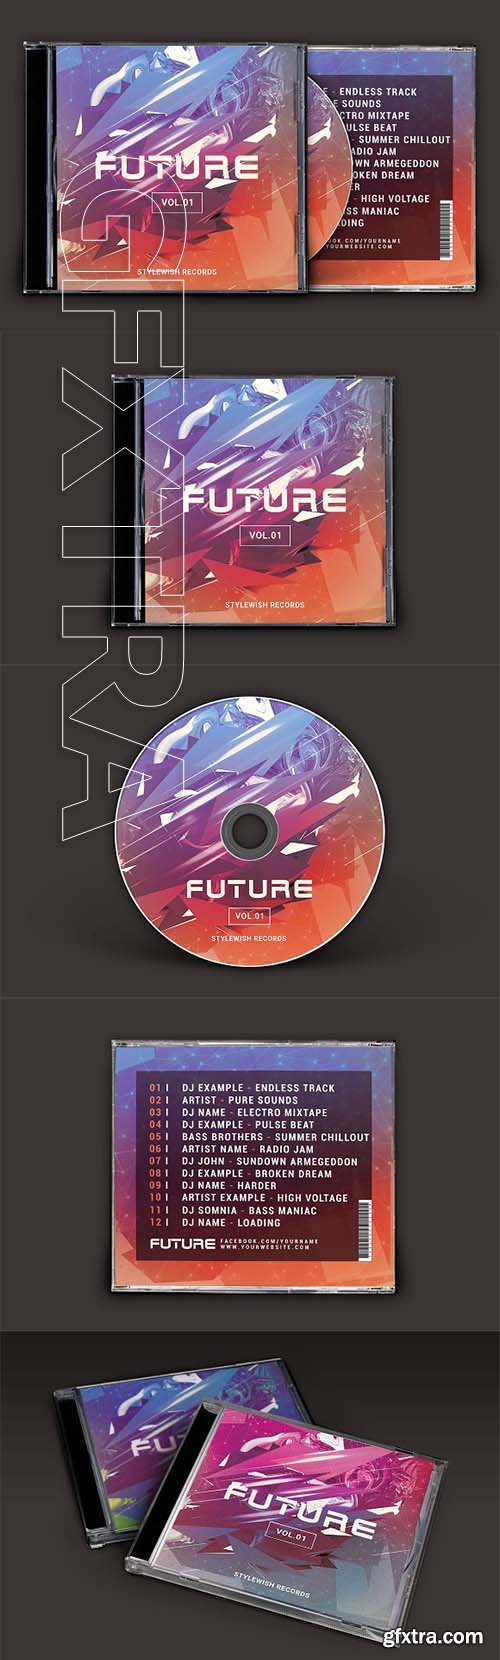 CreativeMarket - Future CD Cover Artwork 2019253